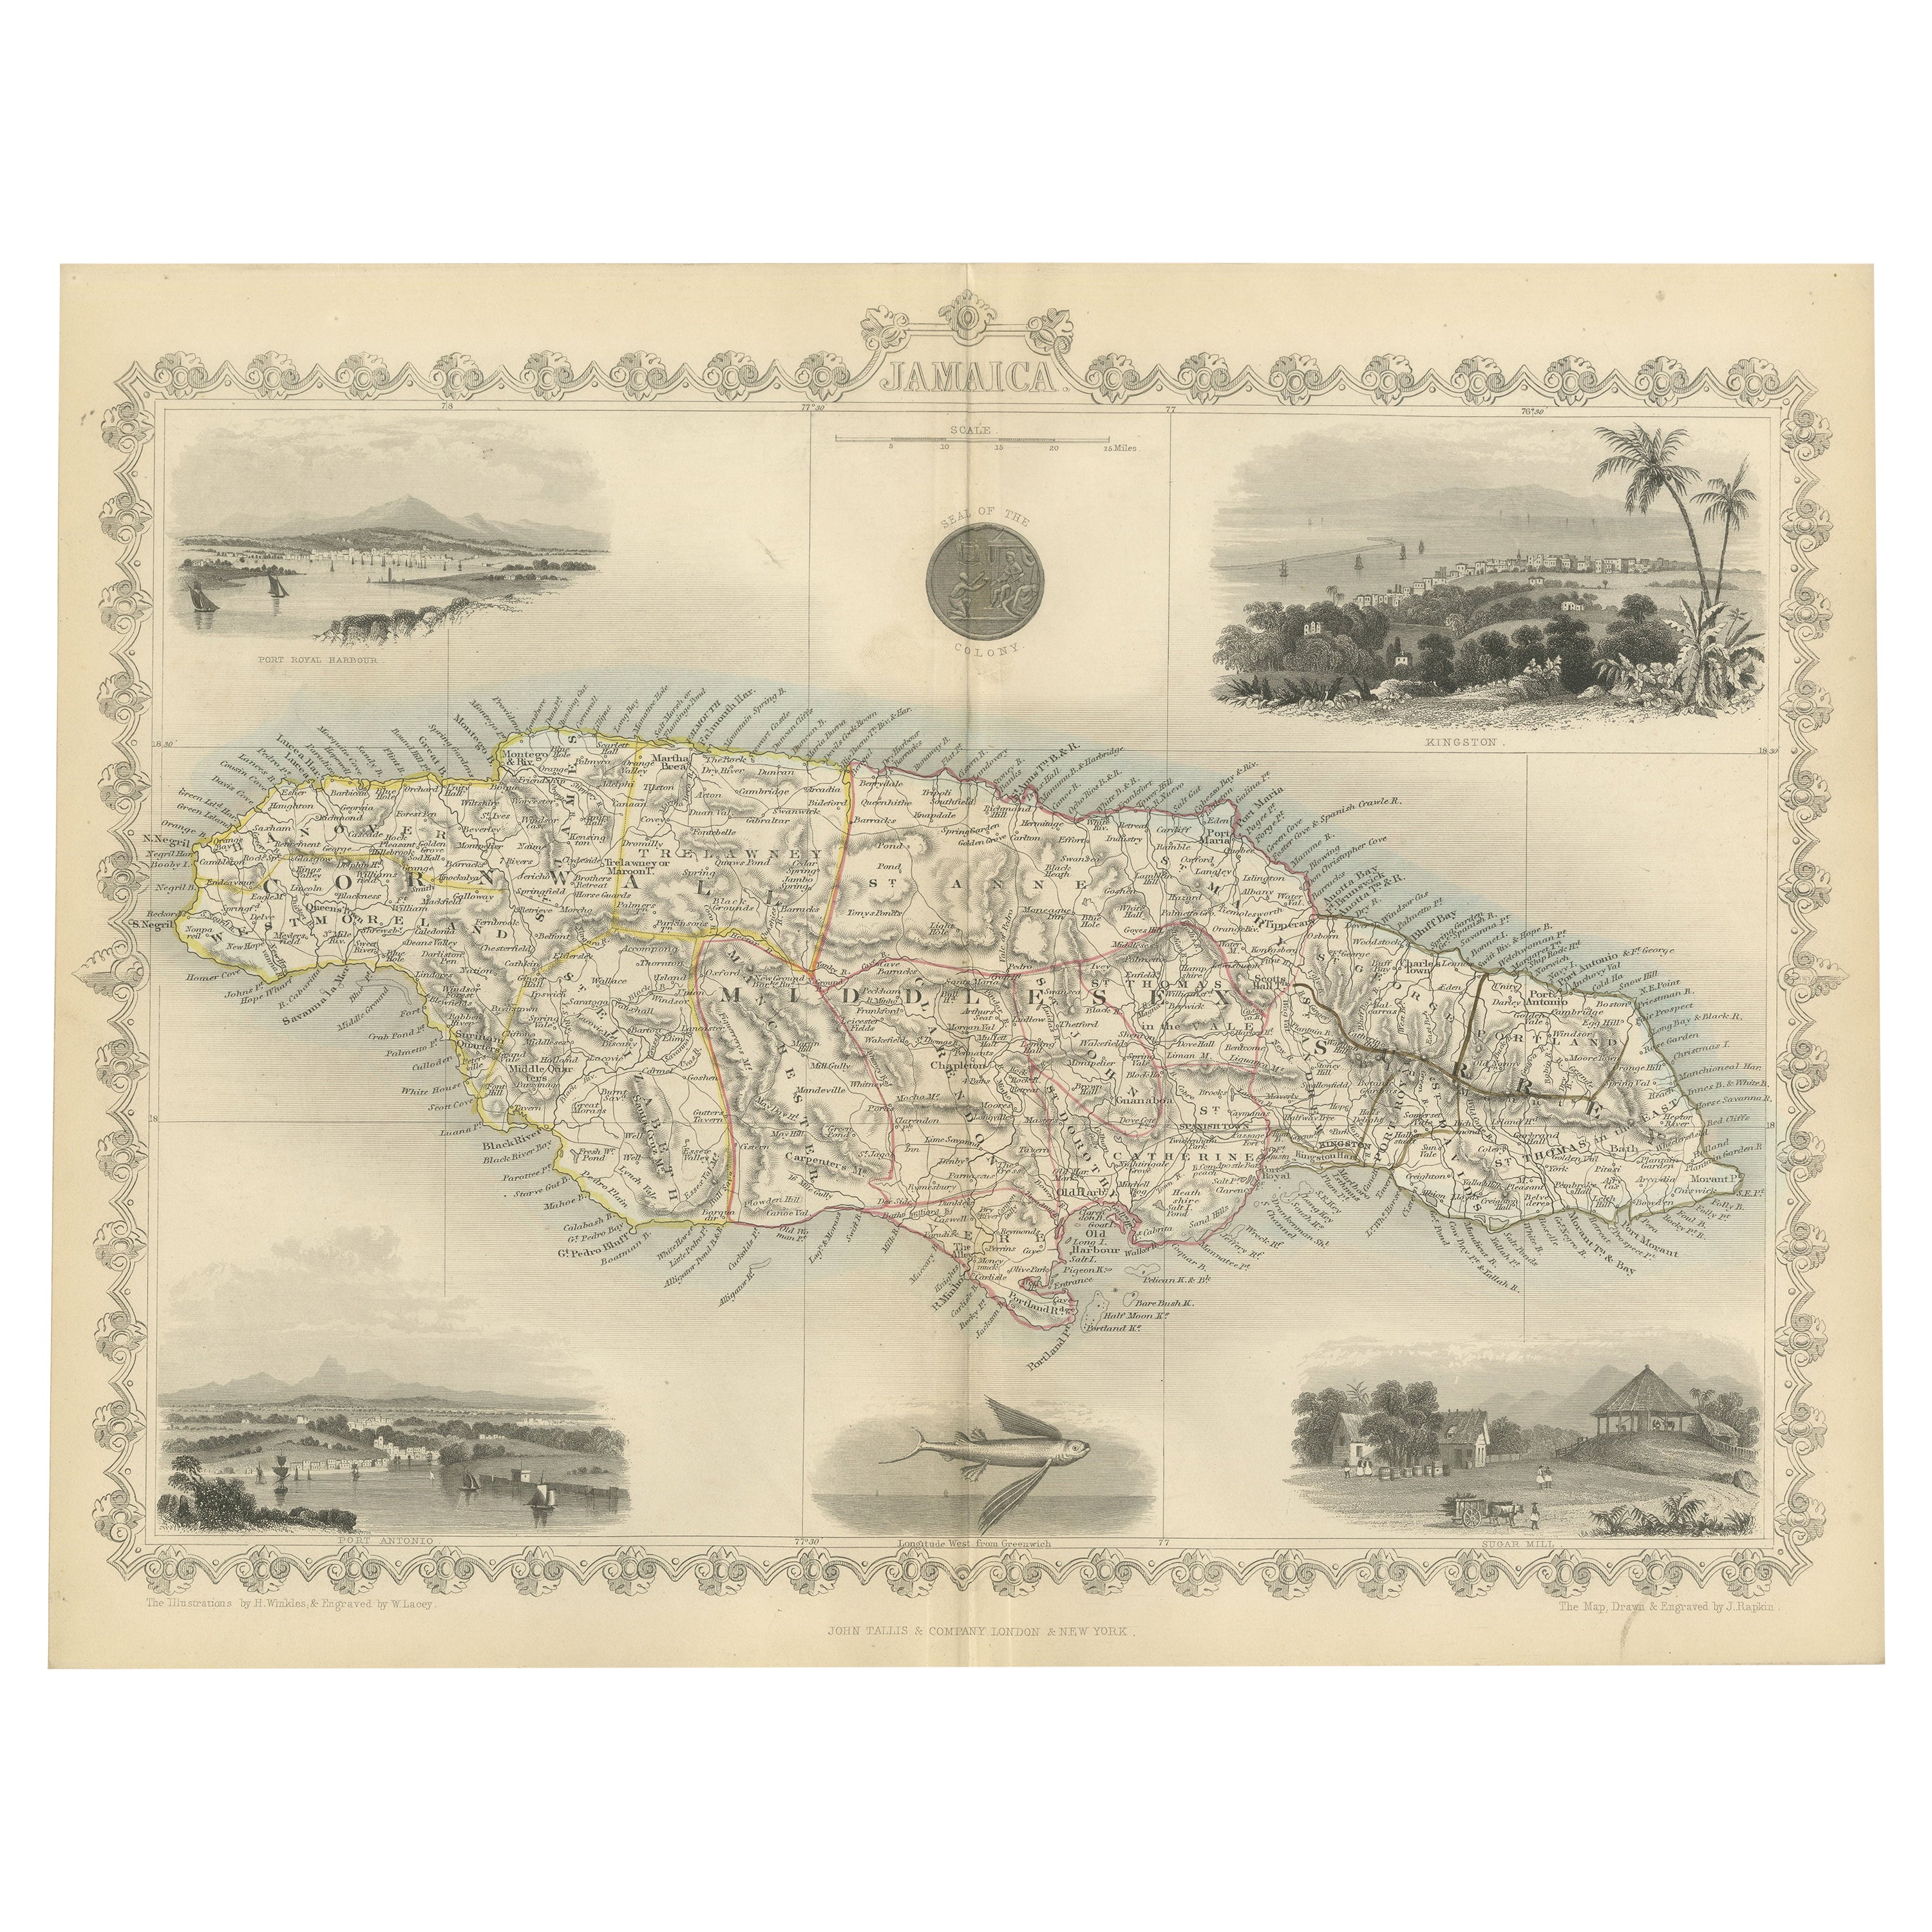 Une carte ornée et historique de Tallis du Jamaïque avec Vignettes décoratives, 1851